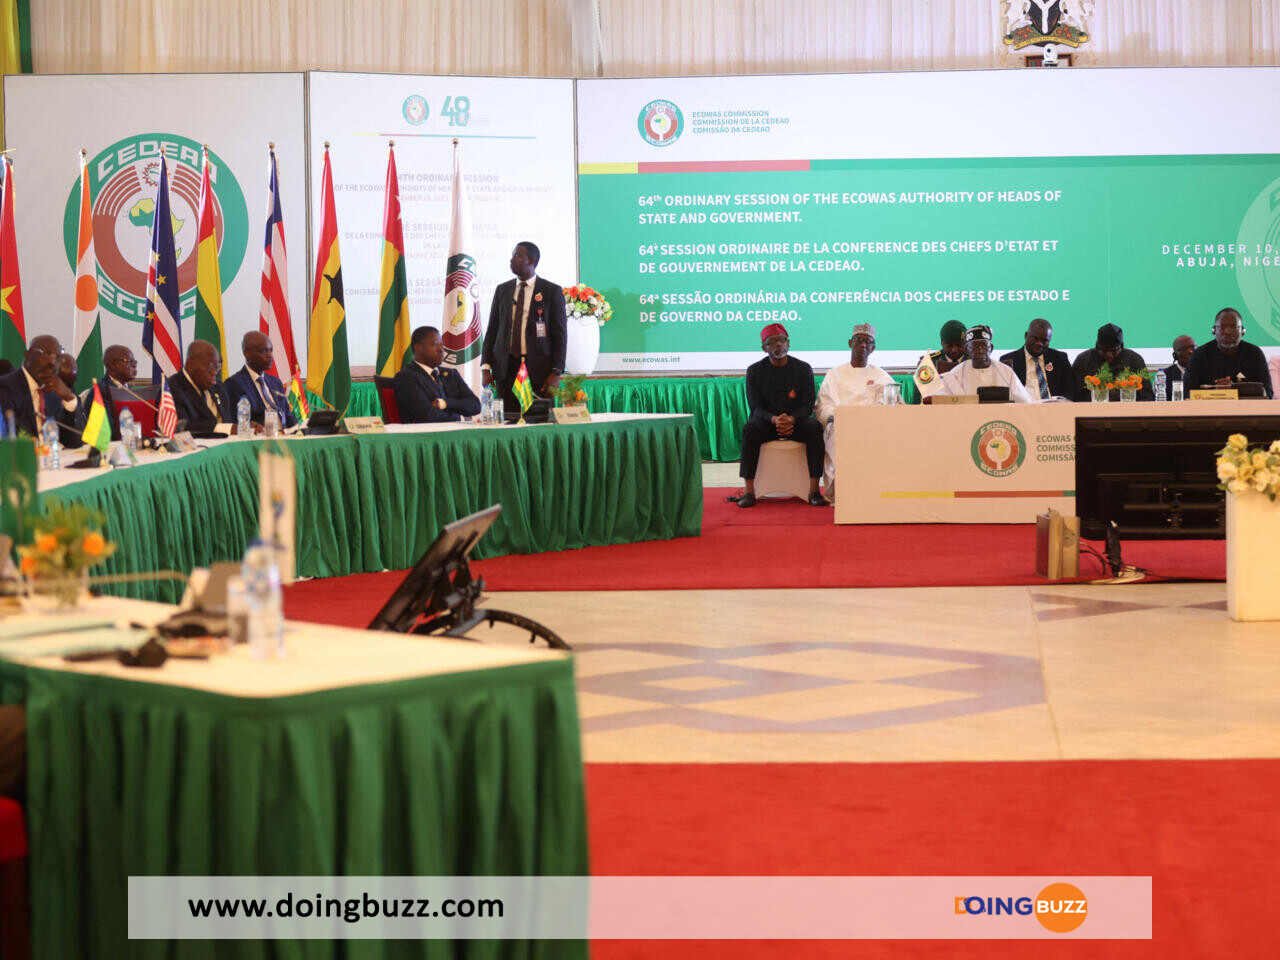 Le Parlement De La Cedeao Va Établir Un Comité De Médiation Pour Le Niger, Le Mali Et Le Burkina Faso